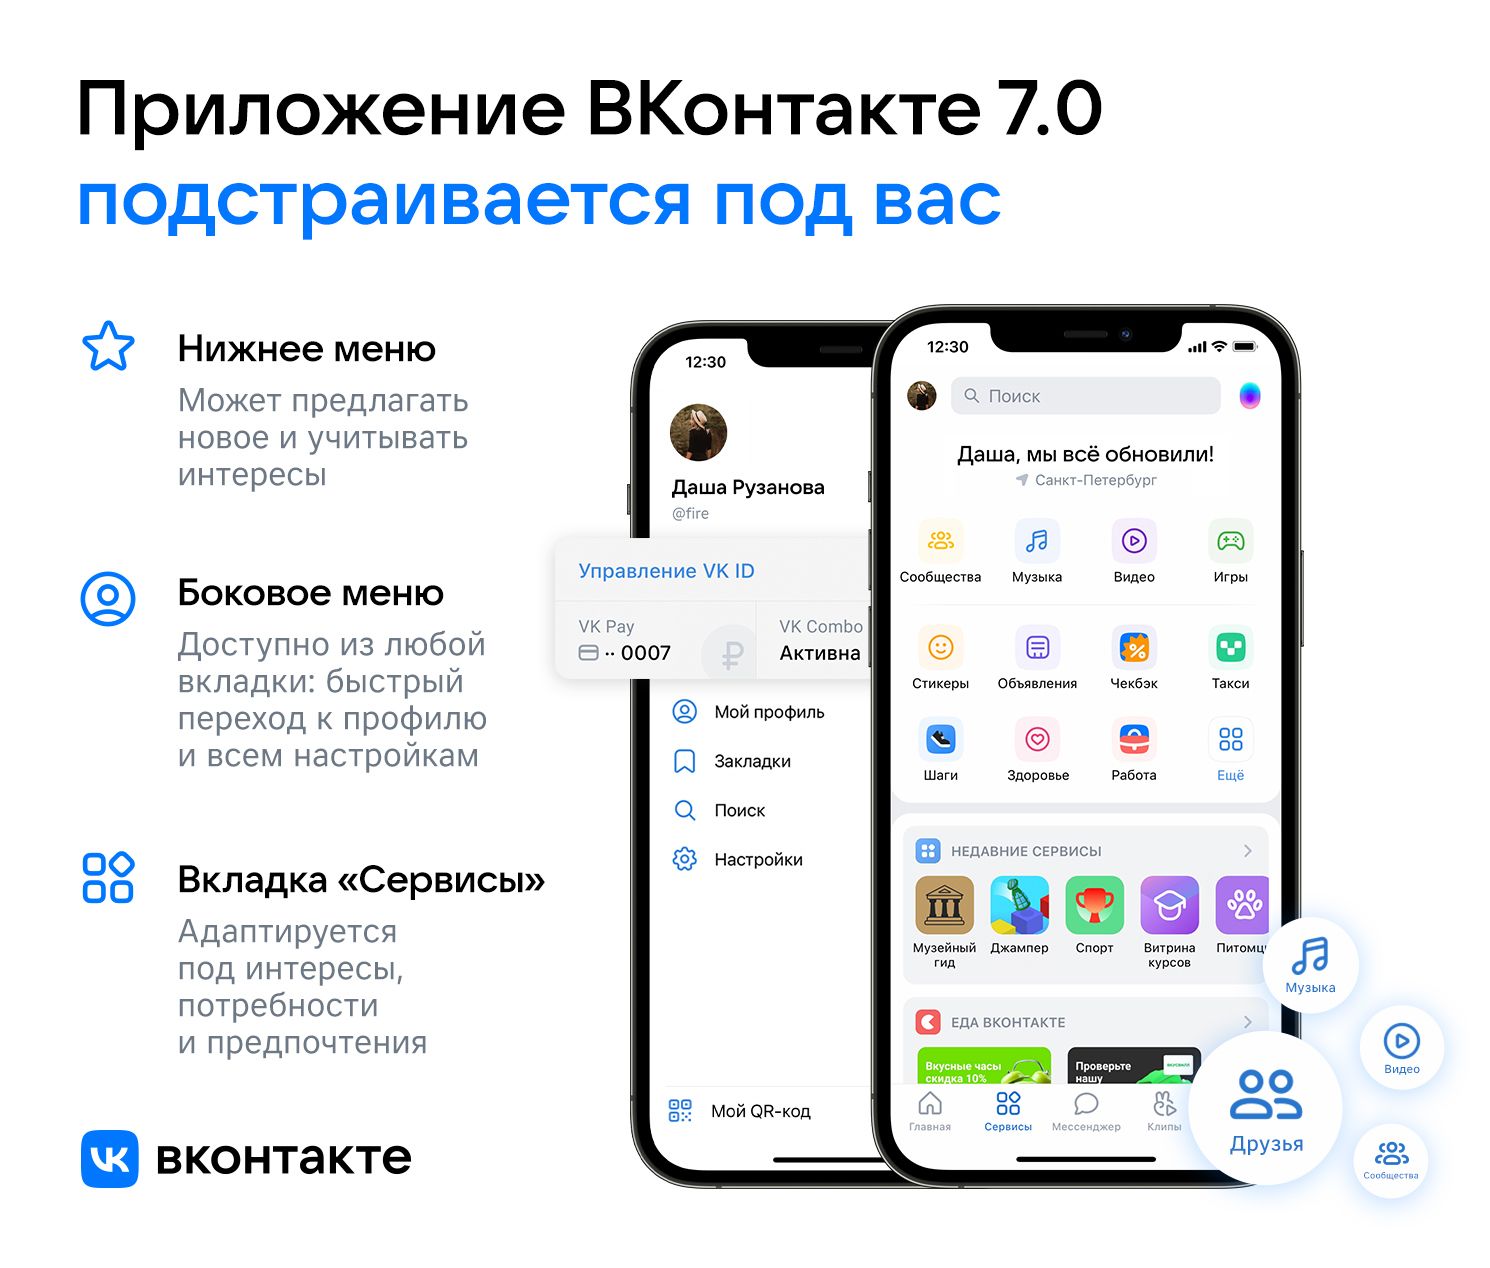 «ВКонтакте» сделает навигацию и «Сервисы» в приложении более персонализированными